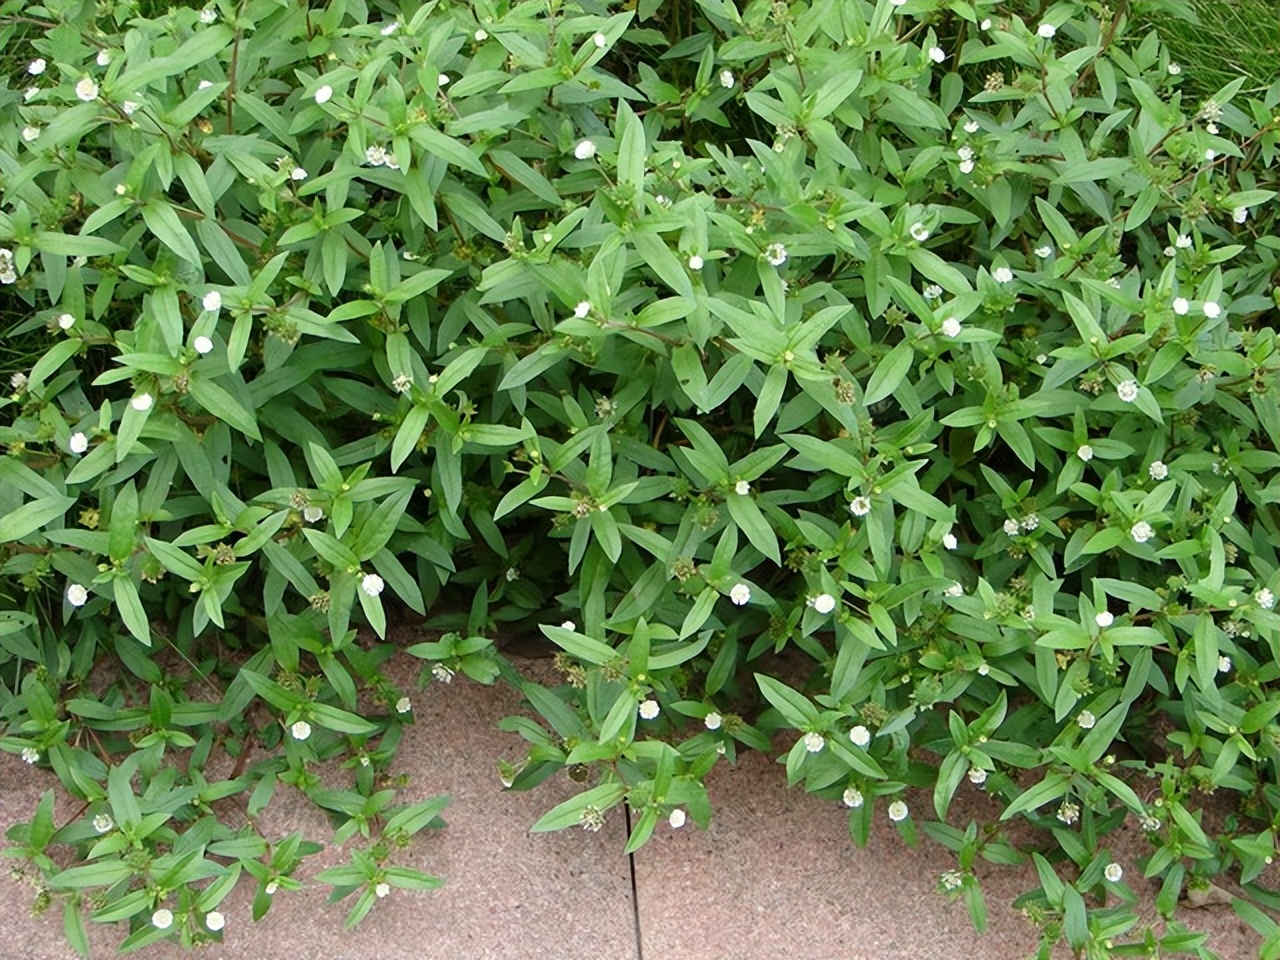 墨旱莲被誉为天然的乌发草,不仅可以药用,嫩茎叶还能当野菜食用